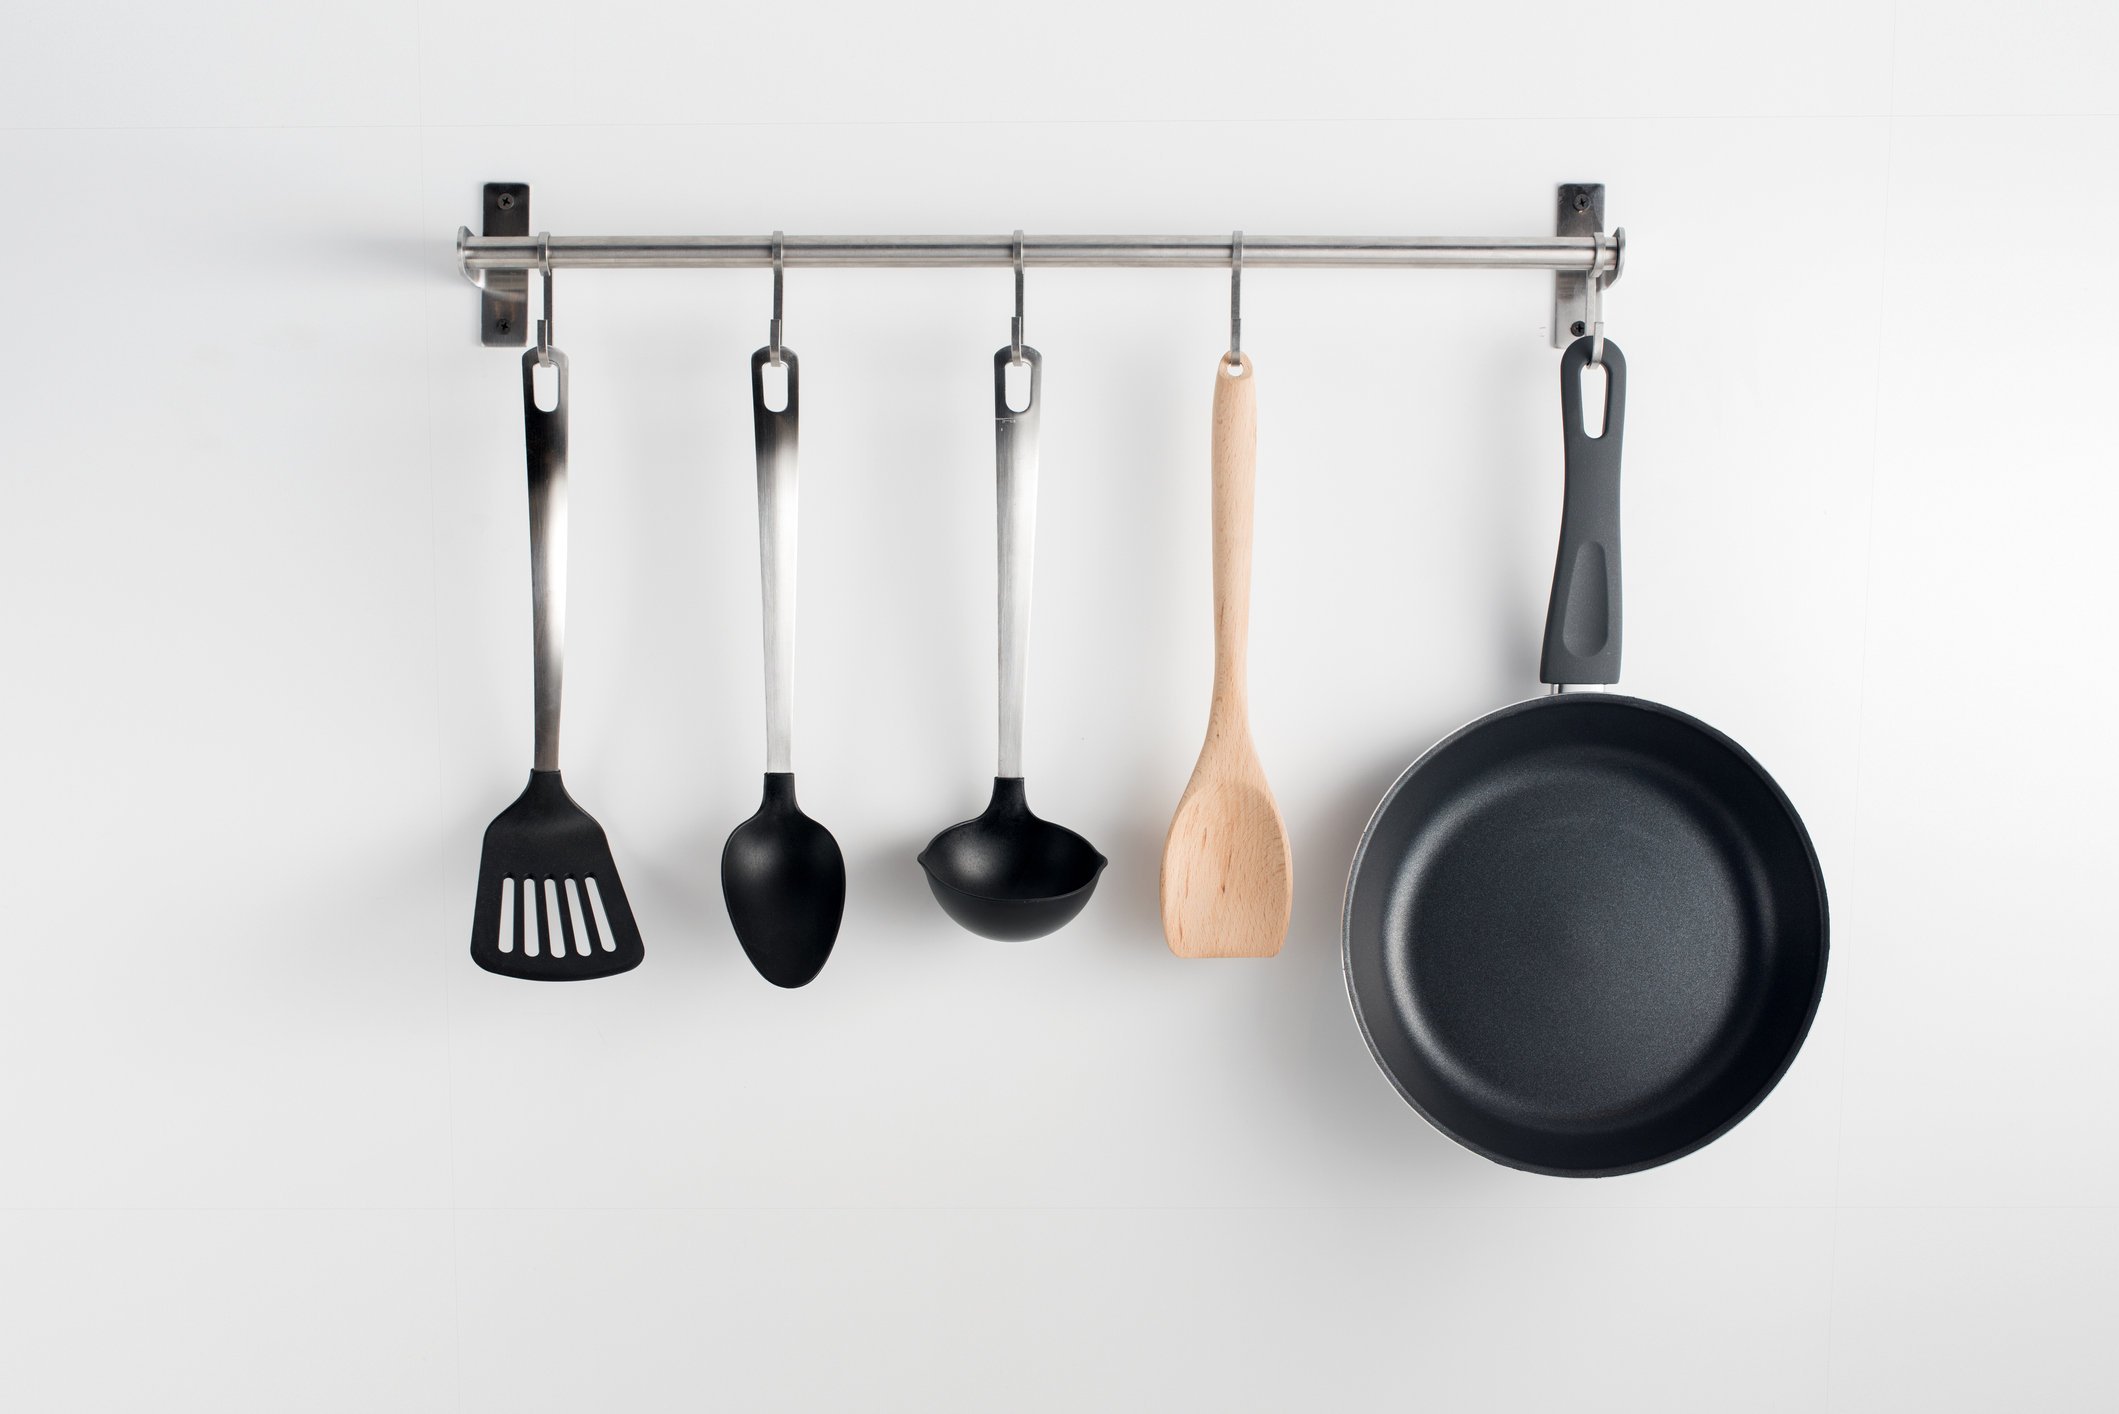 Hanged kitchen utensils